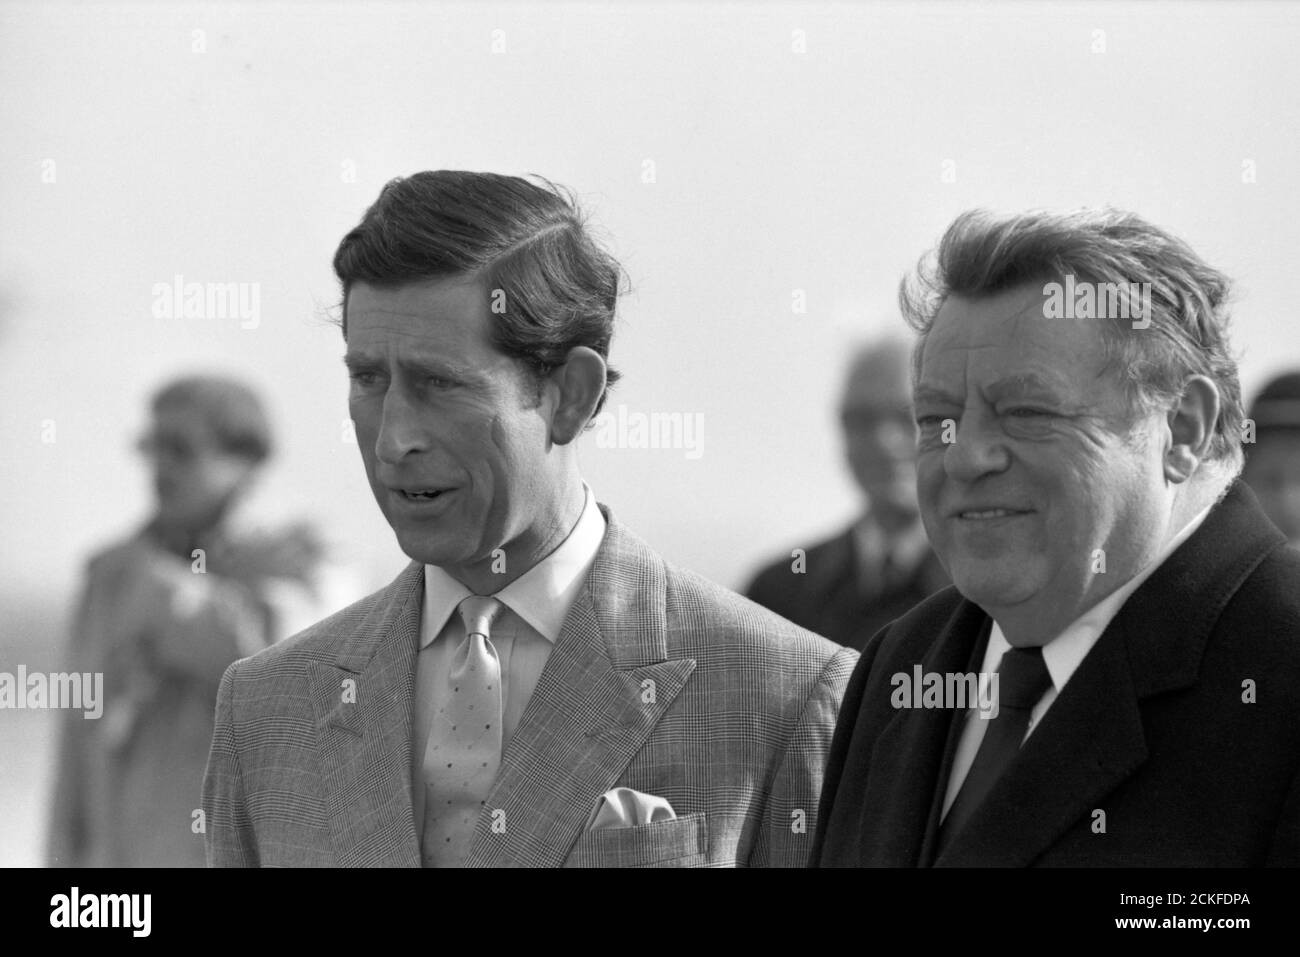 Der bayerische Ministerpräsident Franz Josef Strauß nimmt die königliche Prinzessin Diana und Prinz Charles am Münchner Flughafen Riem, 1987. Der Ministerpräsident von Bayern, Franz Josef Strauß, begrüßte die königlichen Besucher Prinzessin Diana und Prinz Charles bei der Ankunft am Flughafen Riem in München, 1987. Stockfoto